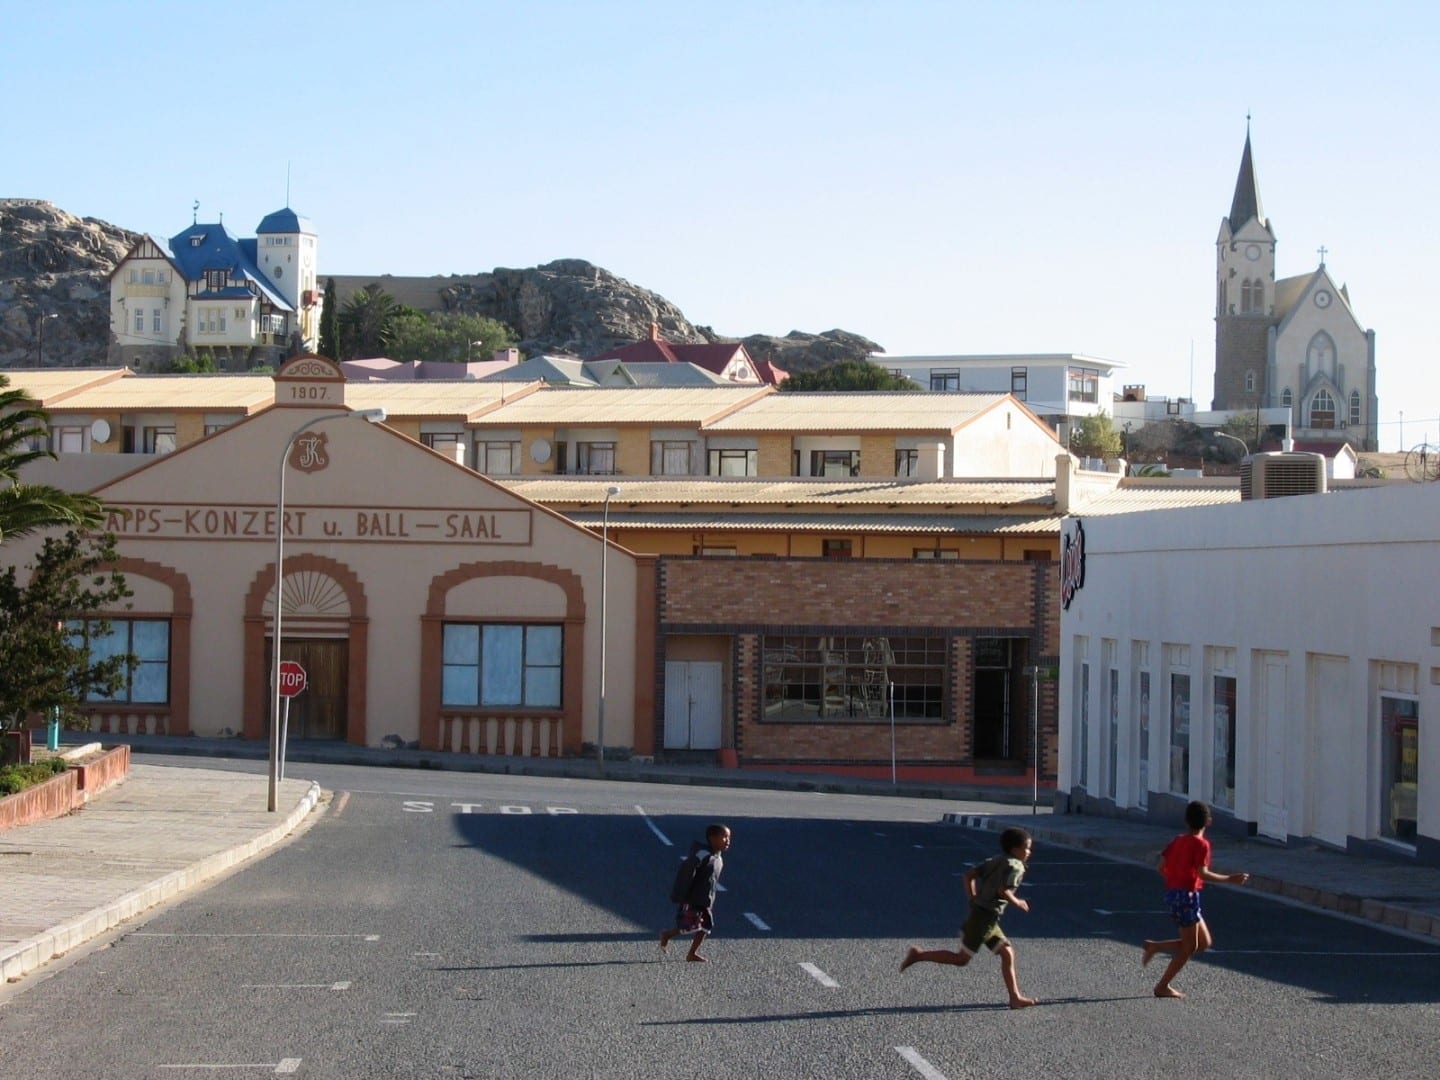 Edificios coloniales alemanes: Kapps Konzert und Ballsaal, con Felsenkirche (derecha) y Goerke Haus (izquierda) al fondo. Lüderitz Namibia